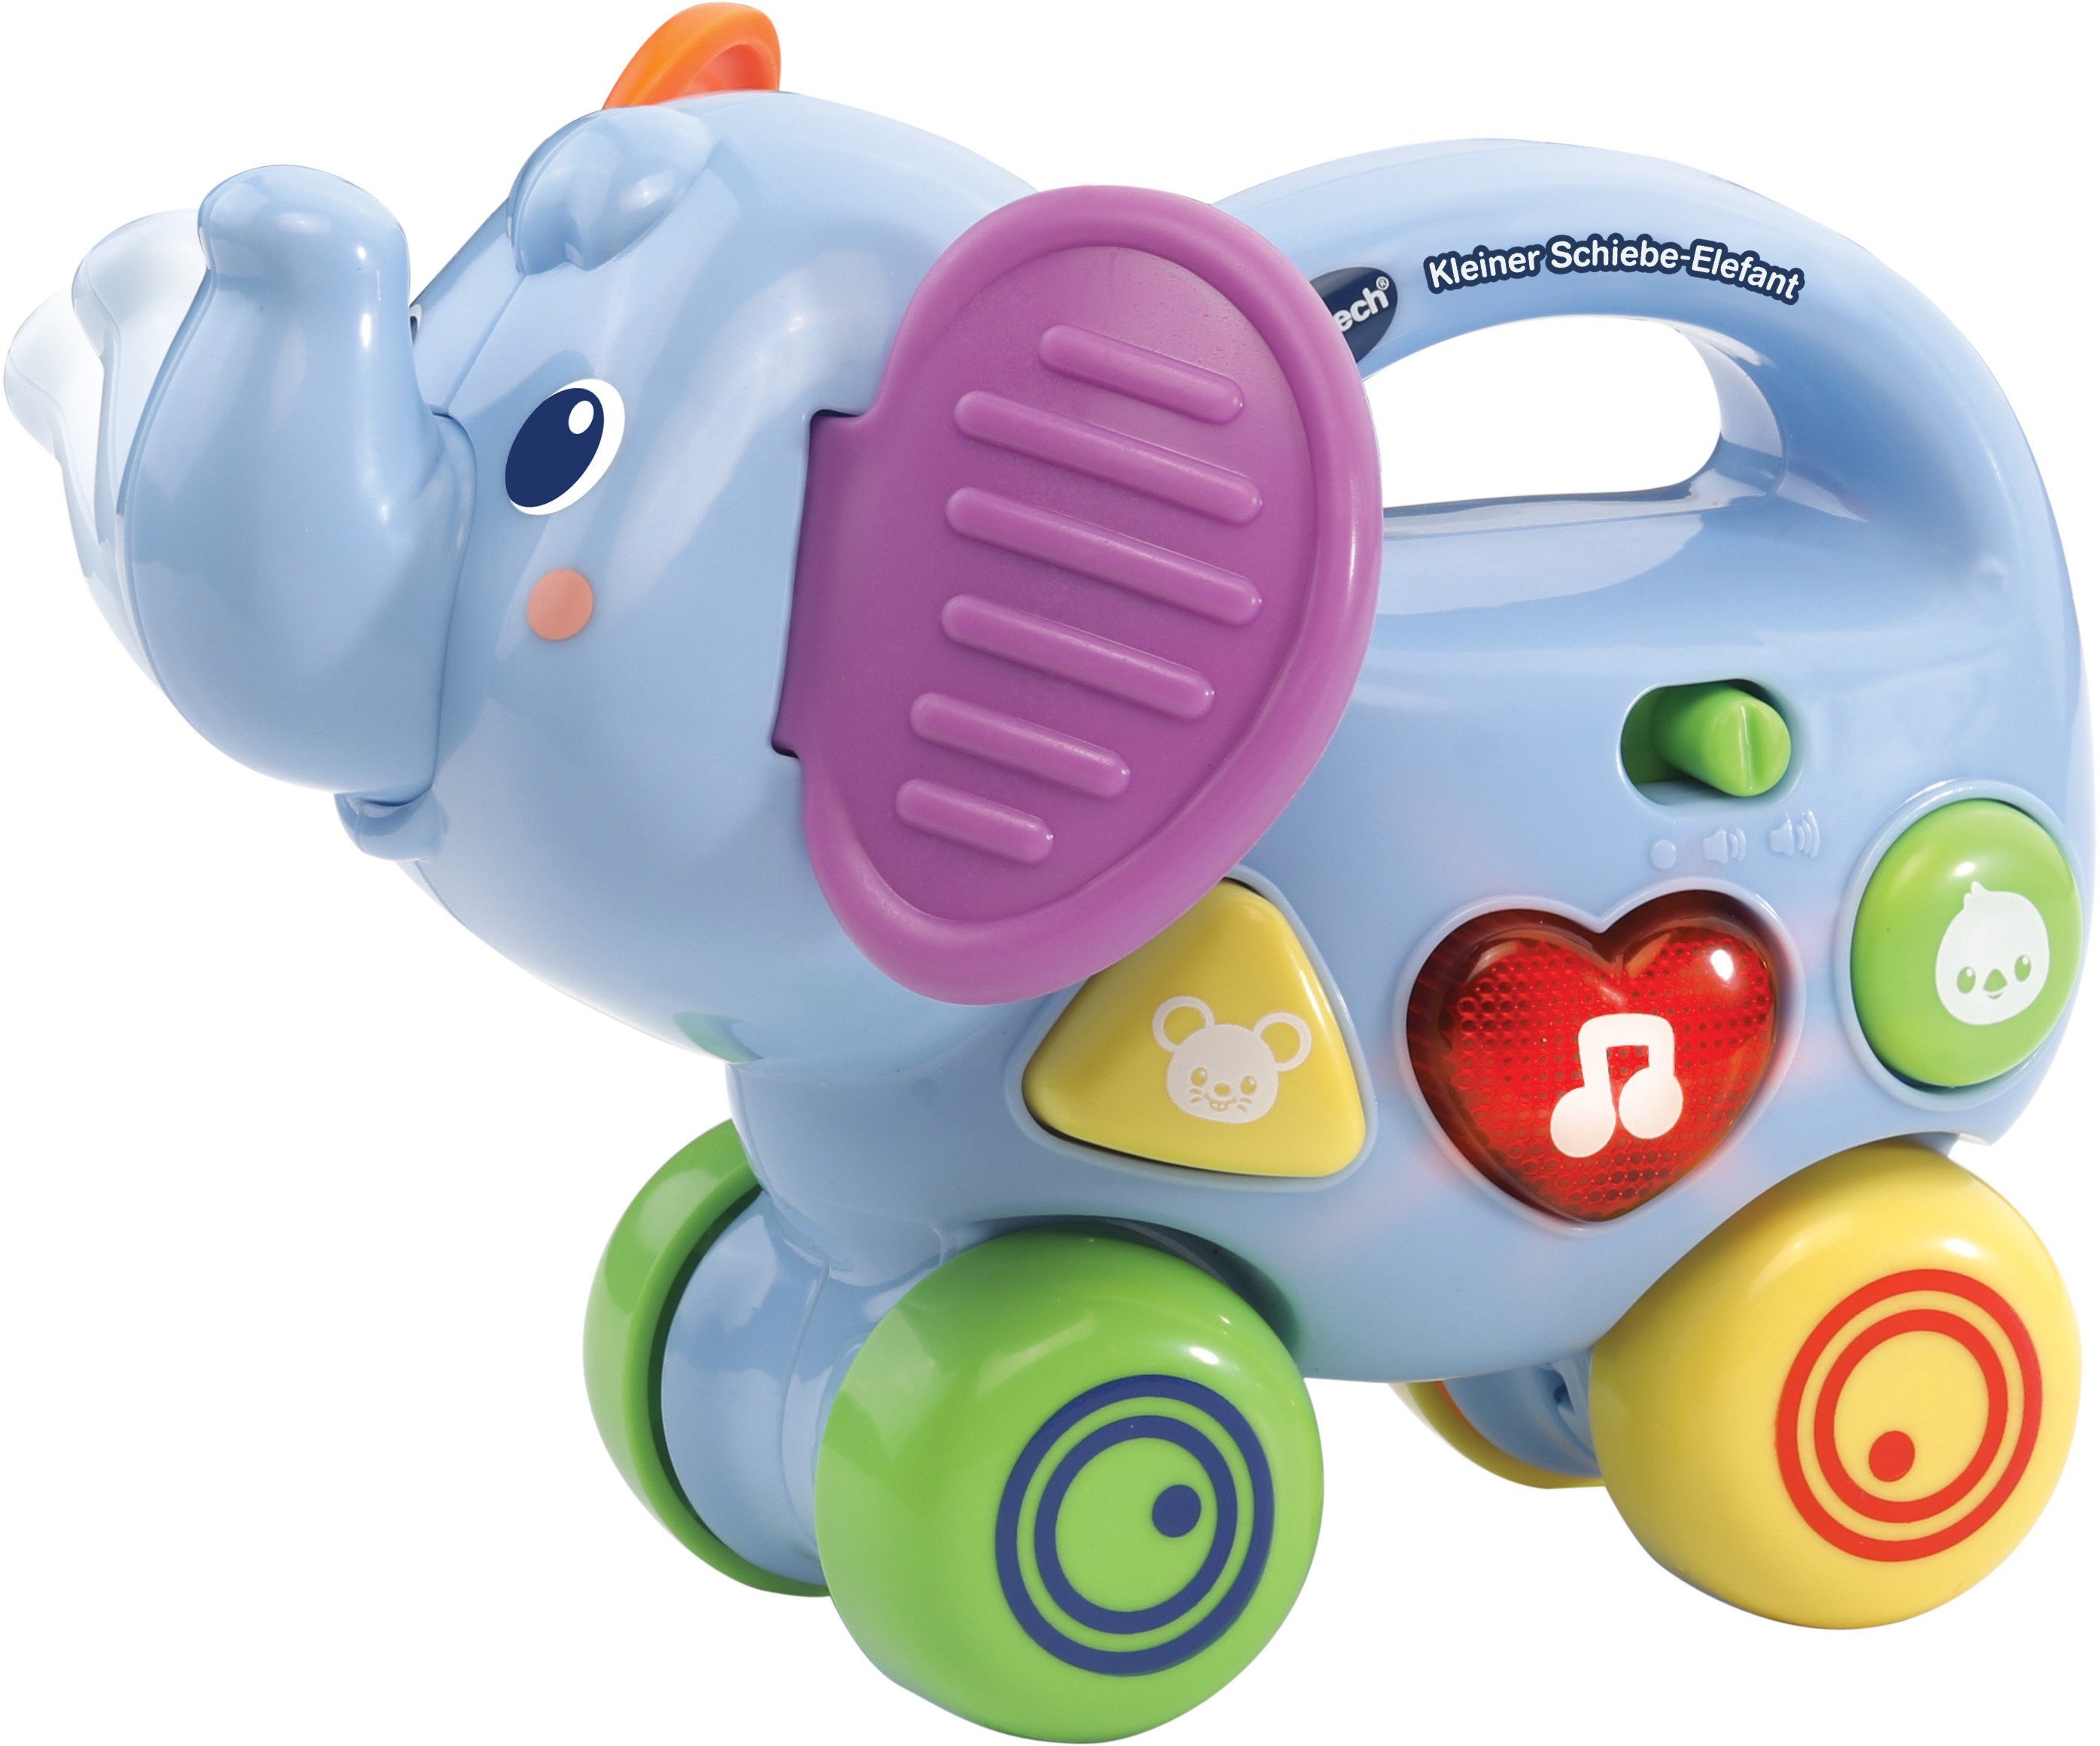 Vtech® Lernspielzeug VTechBaby, Kleiner Schiebe-Elefant, mit Sound, Mit 2  bunten Tasten, um etwas über Tiere und Formen zu lernen